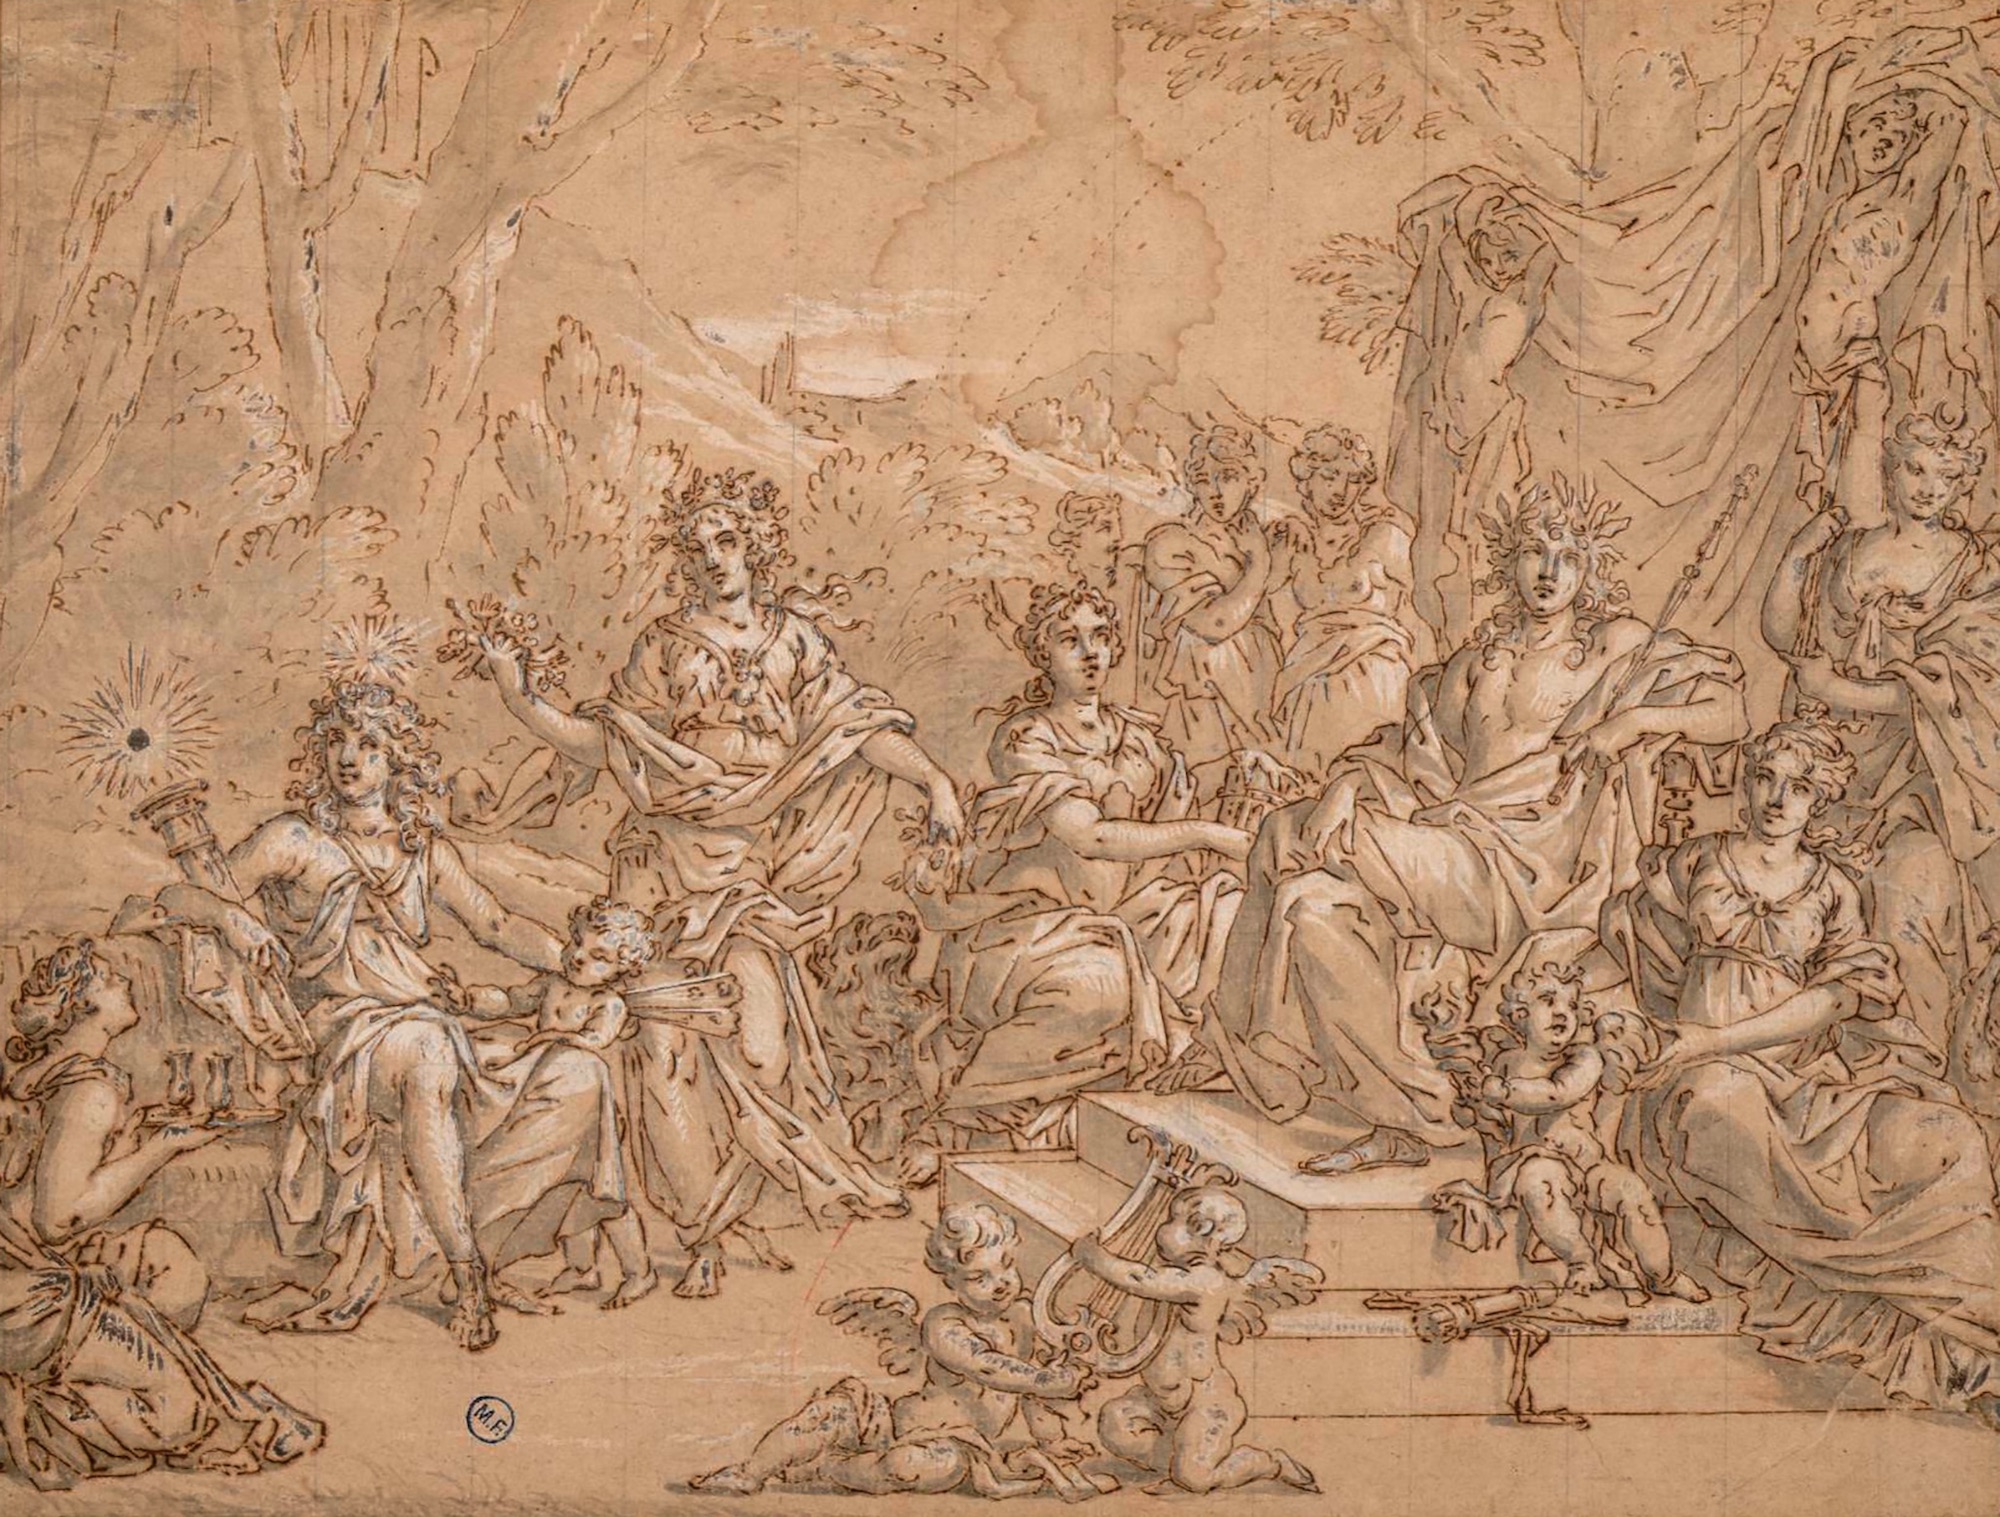 Jean Nocret (1615-1672), La Famille d’Apollon. Plume et encre brune, lavis gris, rehauts de gouache blanche, mise au carreau à la pierre noire sur papier vergé, 28,5 x 37,8 cm. Montpellier, musée Fabre. © musée Fabre de Montpellier Méditerranée Métropole / Frédéric Jaulmes